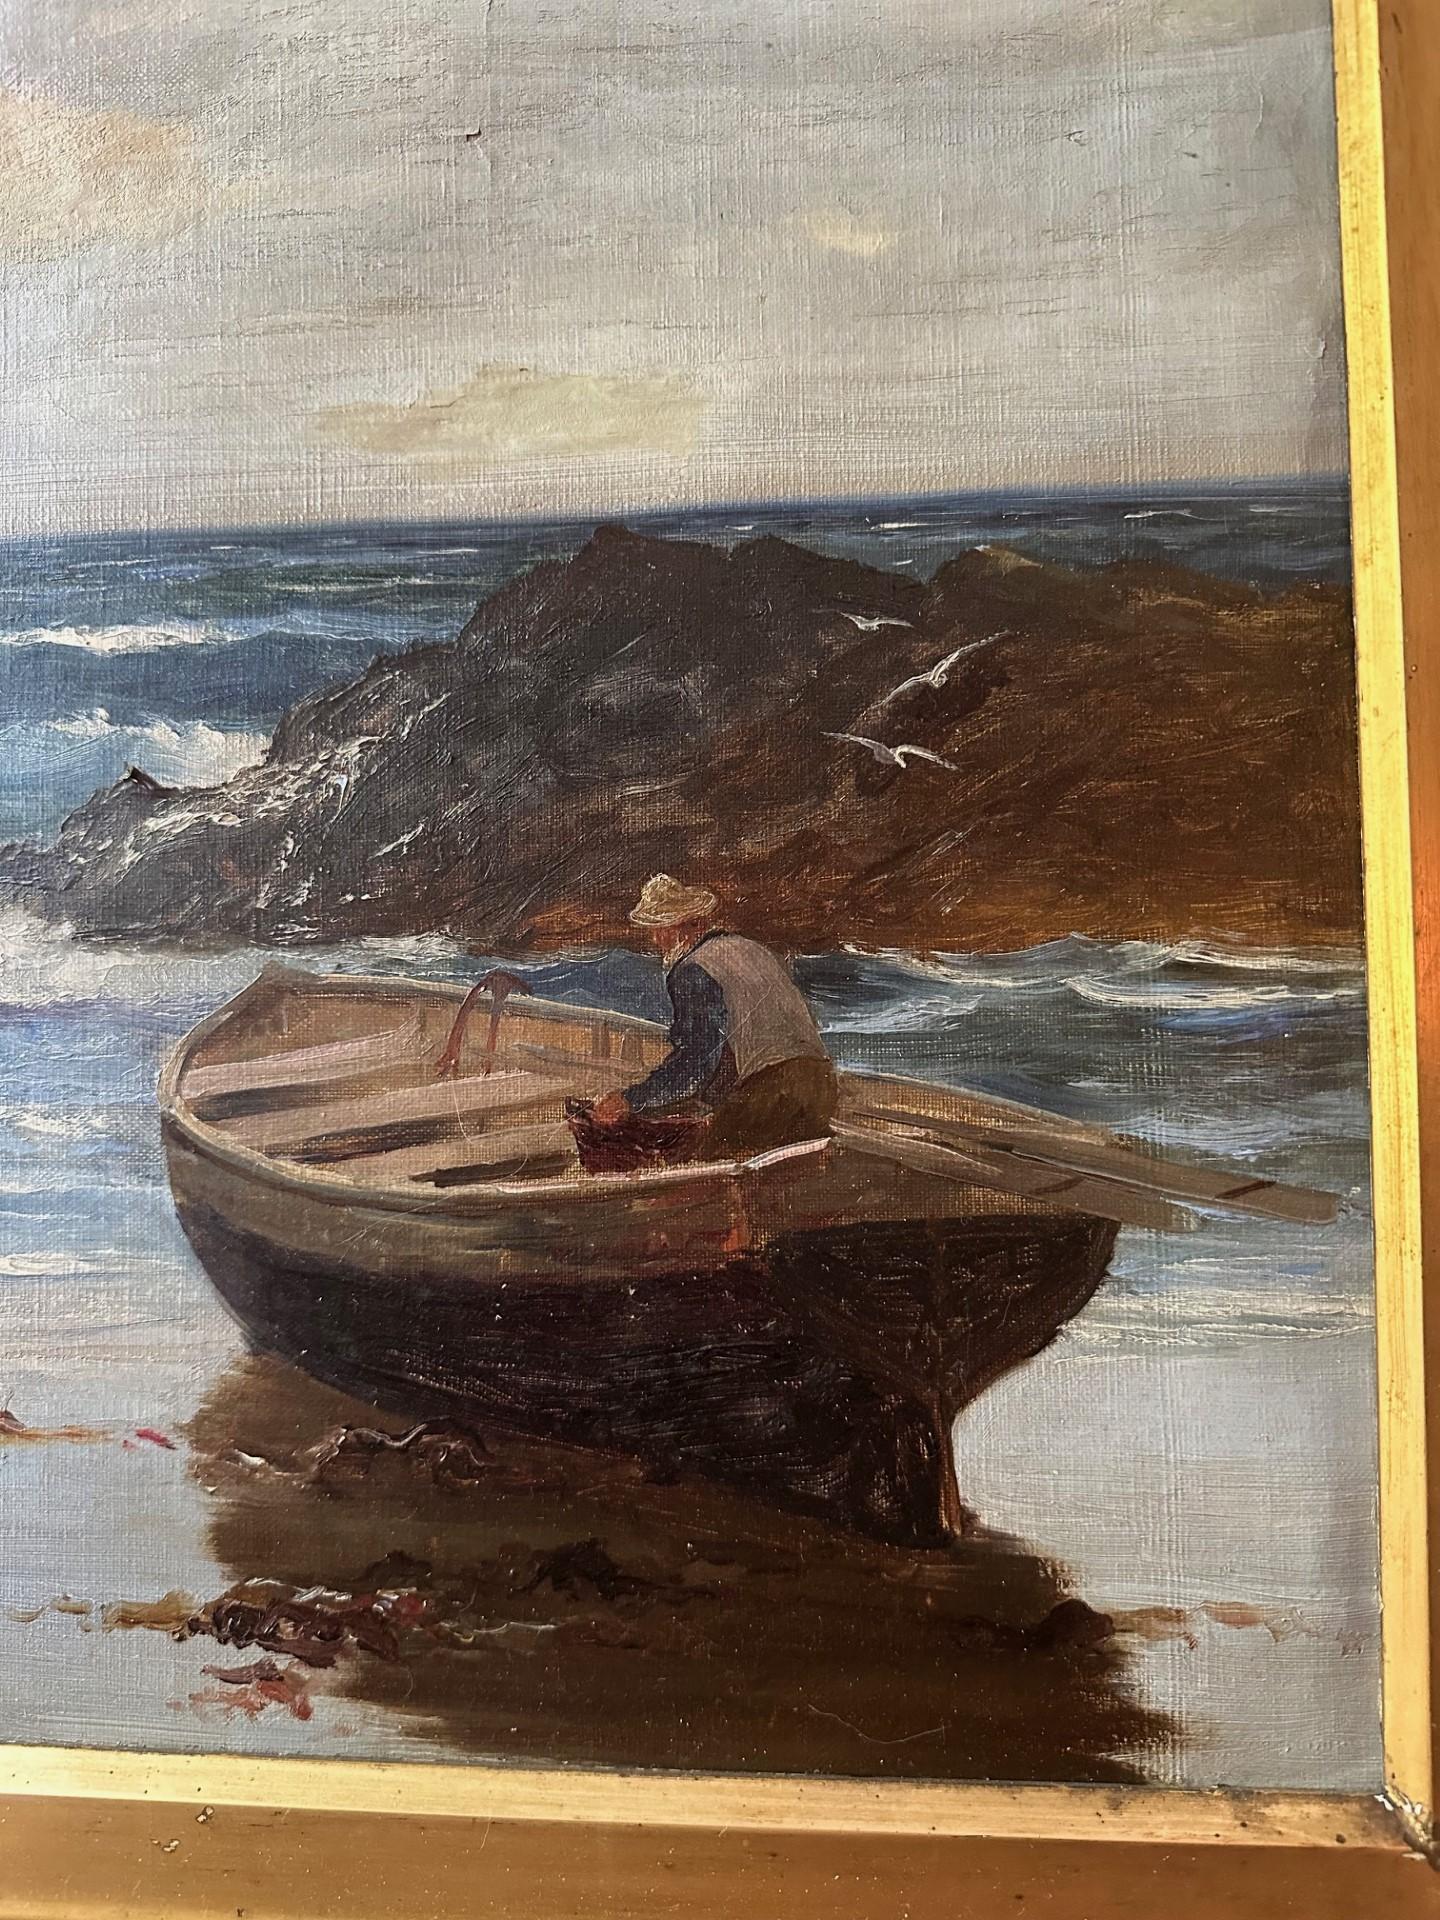 Richard Wane (1852-1904) Meereslandschaft, Ölgemälde, Waiting for the Tide, Waiting for the Tide.

Faszinierendes Gemälde einer Küstenszene des englischen Künstlers. Richard Wane. Er war ein Meister der stimmungsvollen Küstenmalerei. Wane studierte